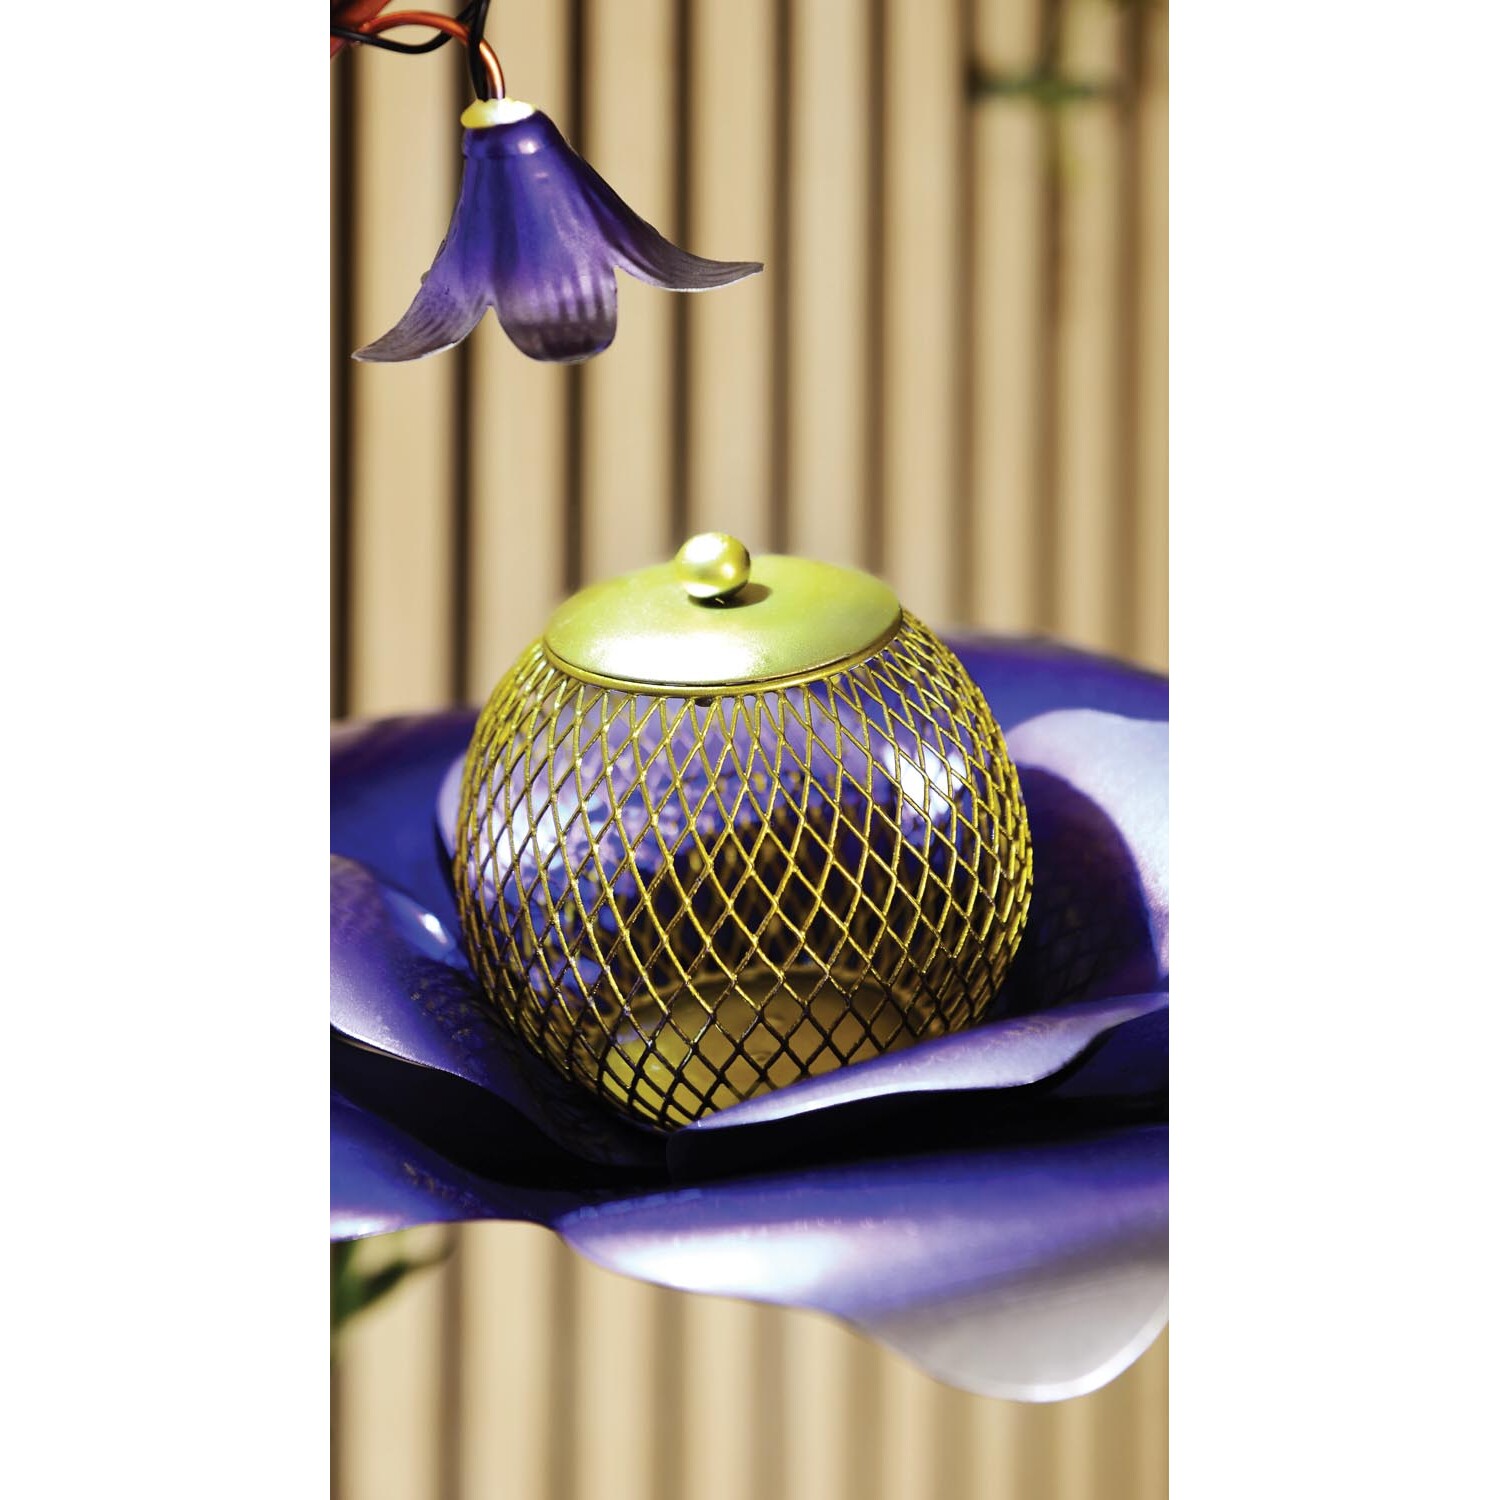 Solar Hanging Flower Birdfeeder Image 6